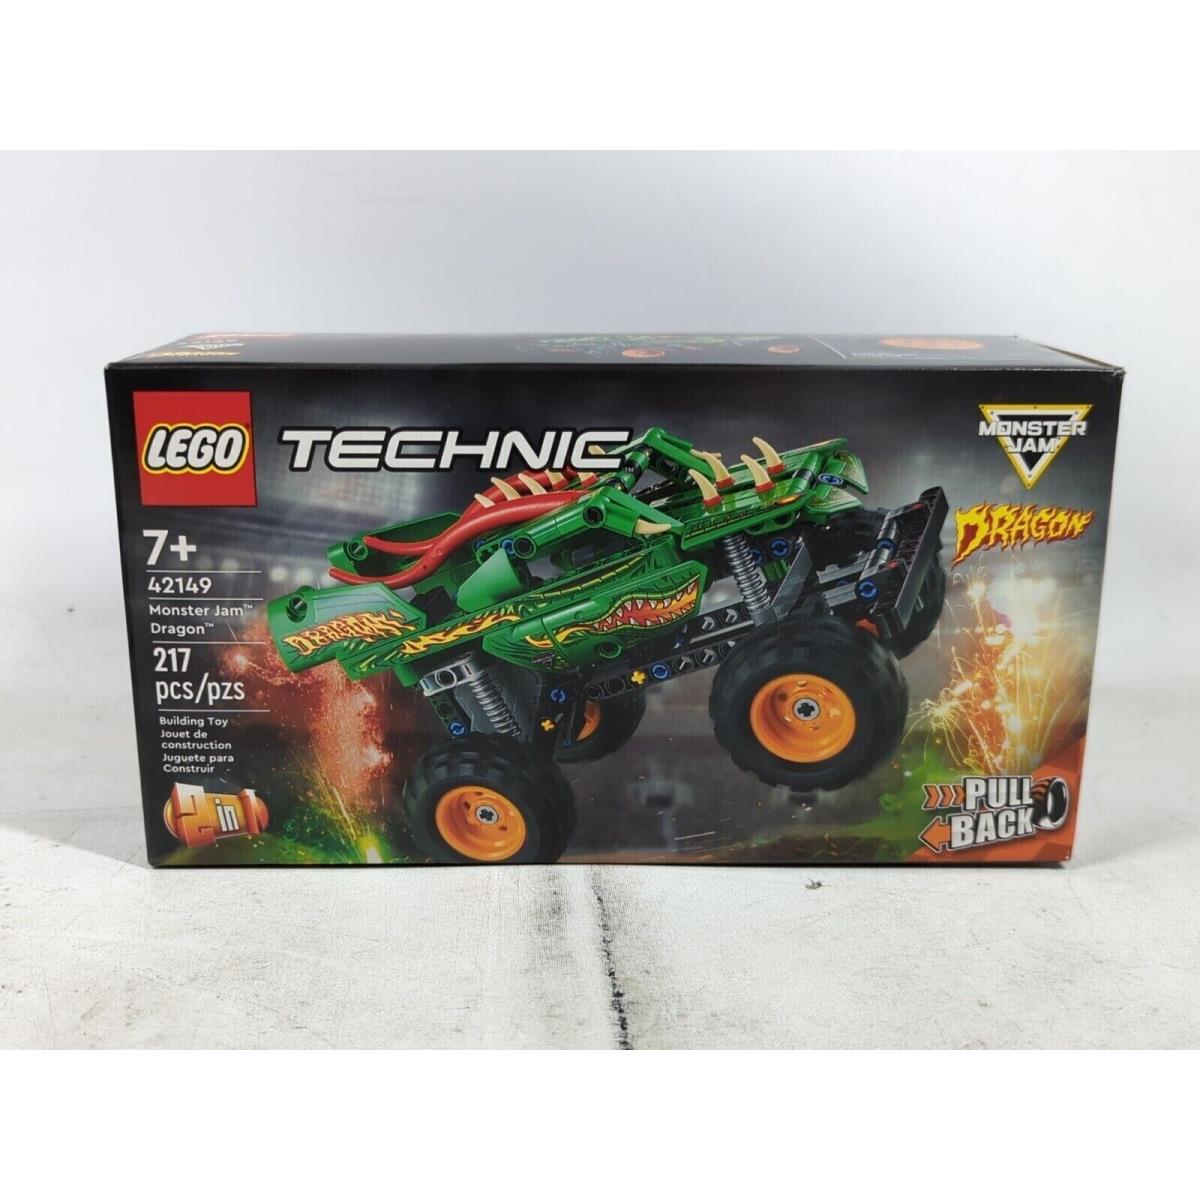 Lego Technic: Monster Jam Dragon 42149